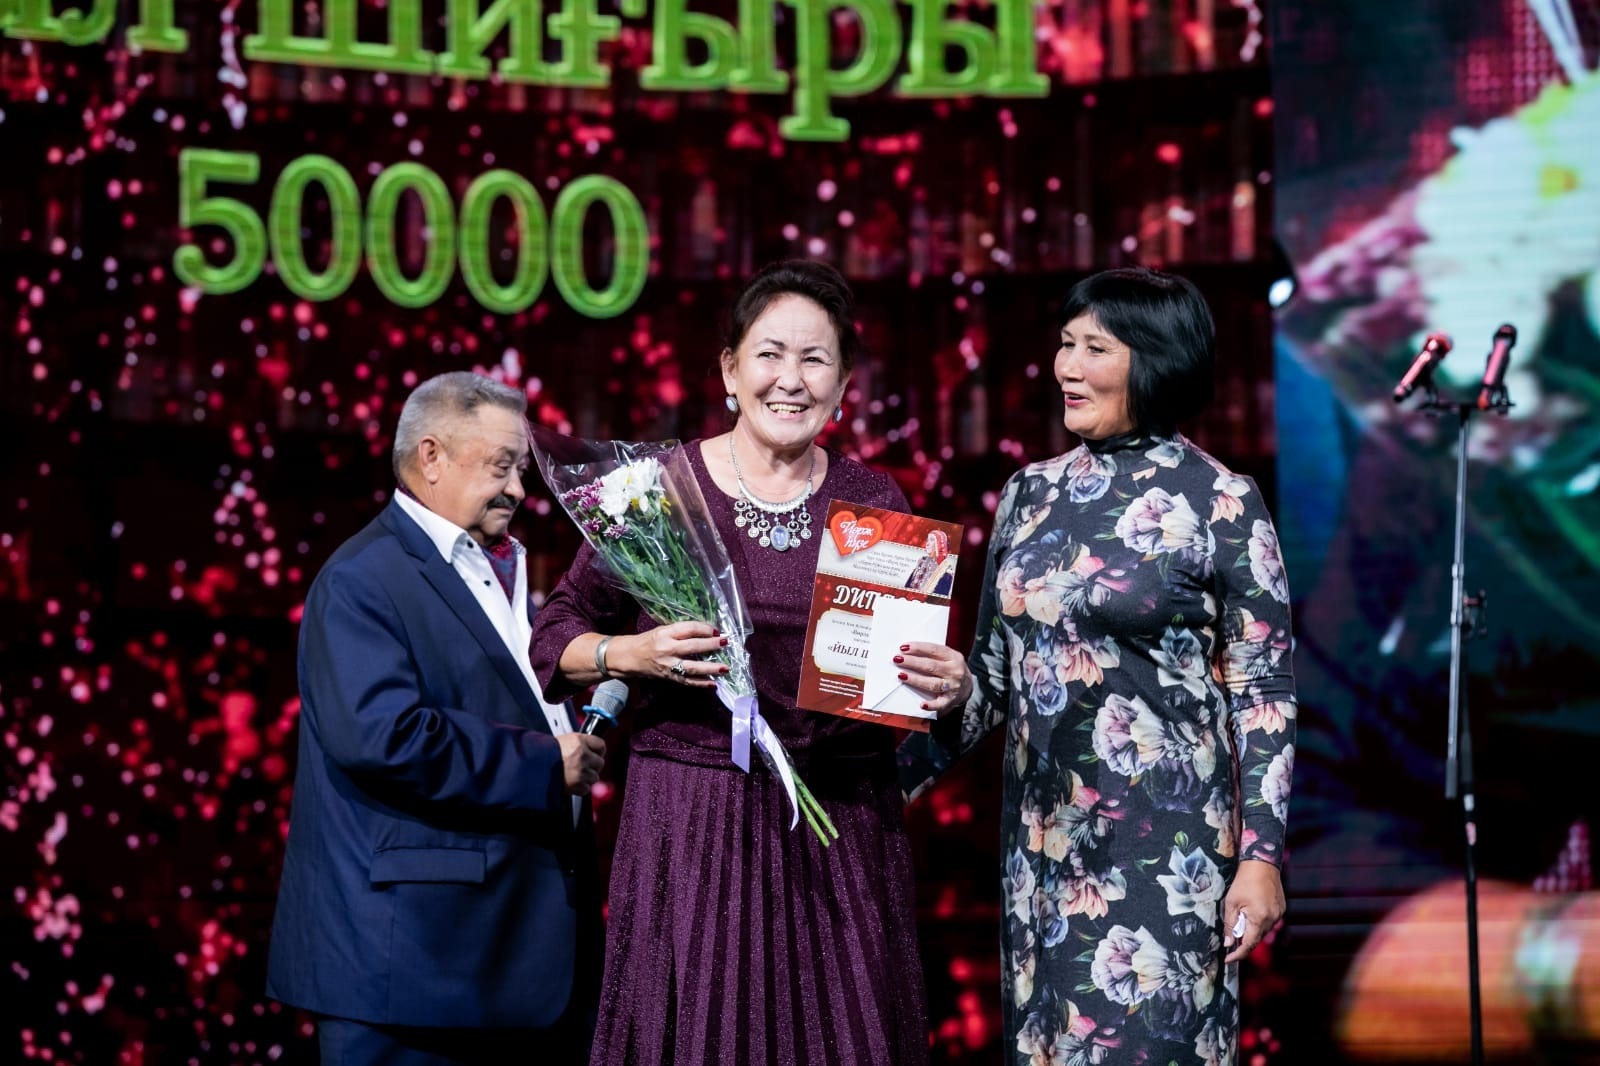 Әнисә Мәхийәнова «Йыл шиғыры» номинацияһында  еңеүсе тип табылды.